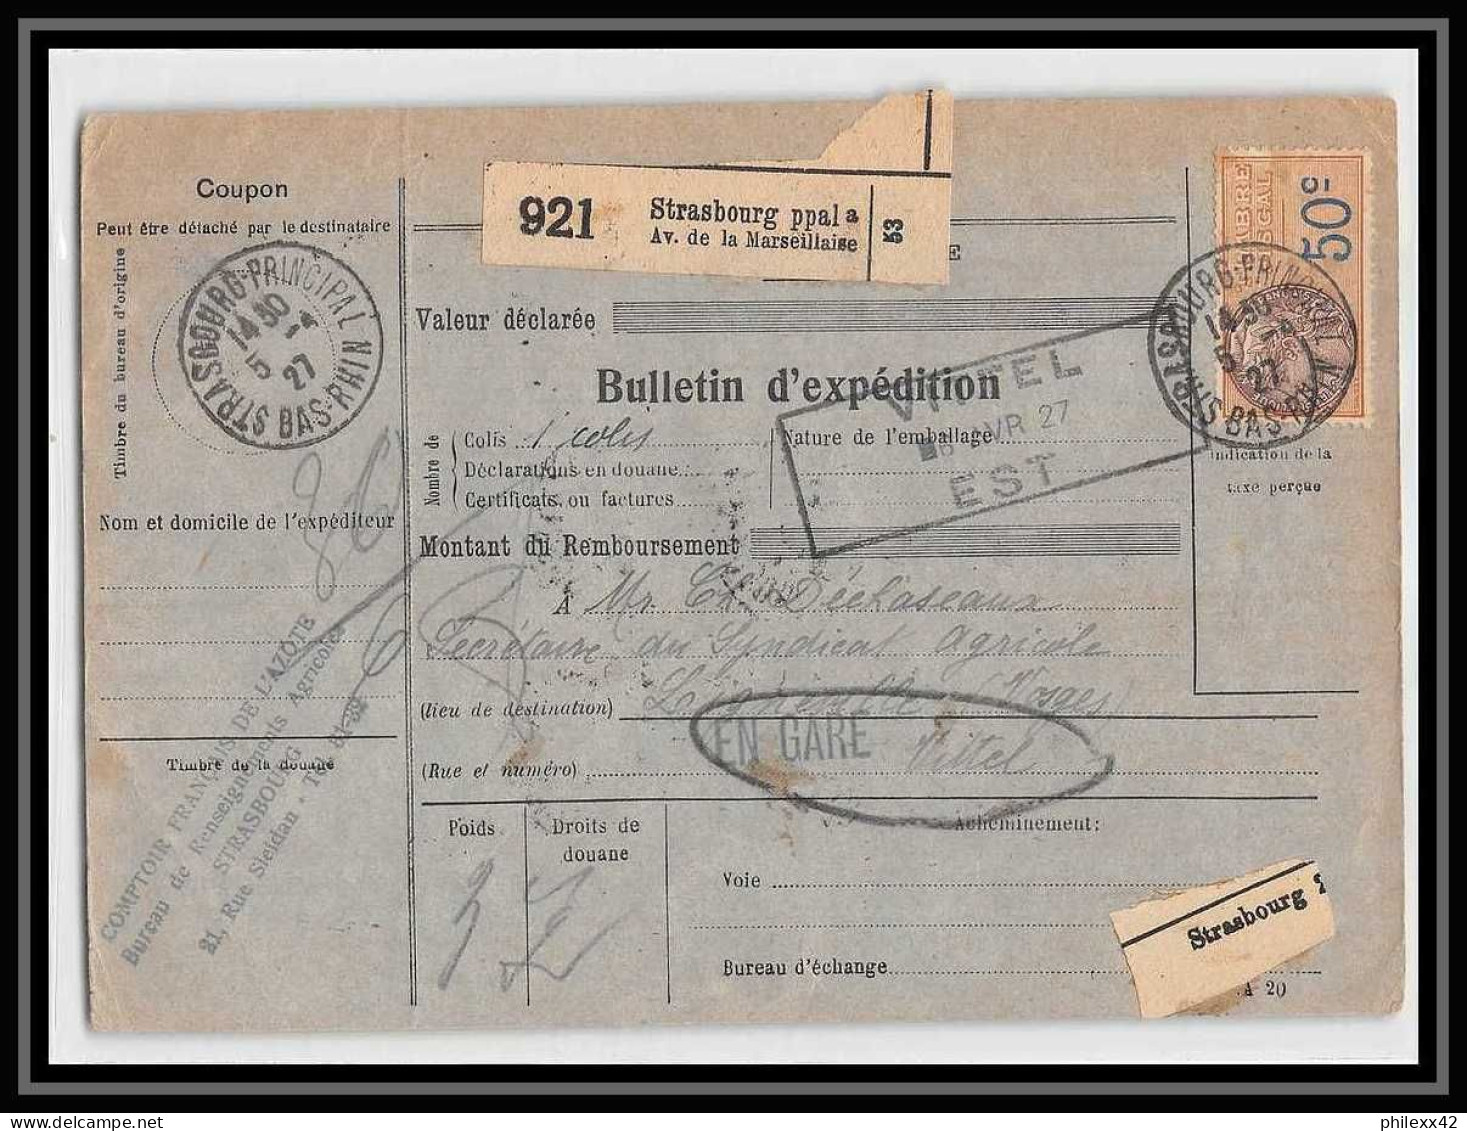 25270/ Bulletin D'expédition France Colis Postaux Fiscal Strasbourg Ppal Pour Lignéville Vosges En Gare 1927 Merson 145 - Briefe U. Dokumente